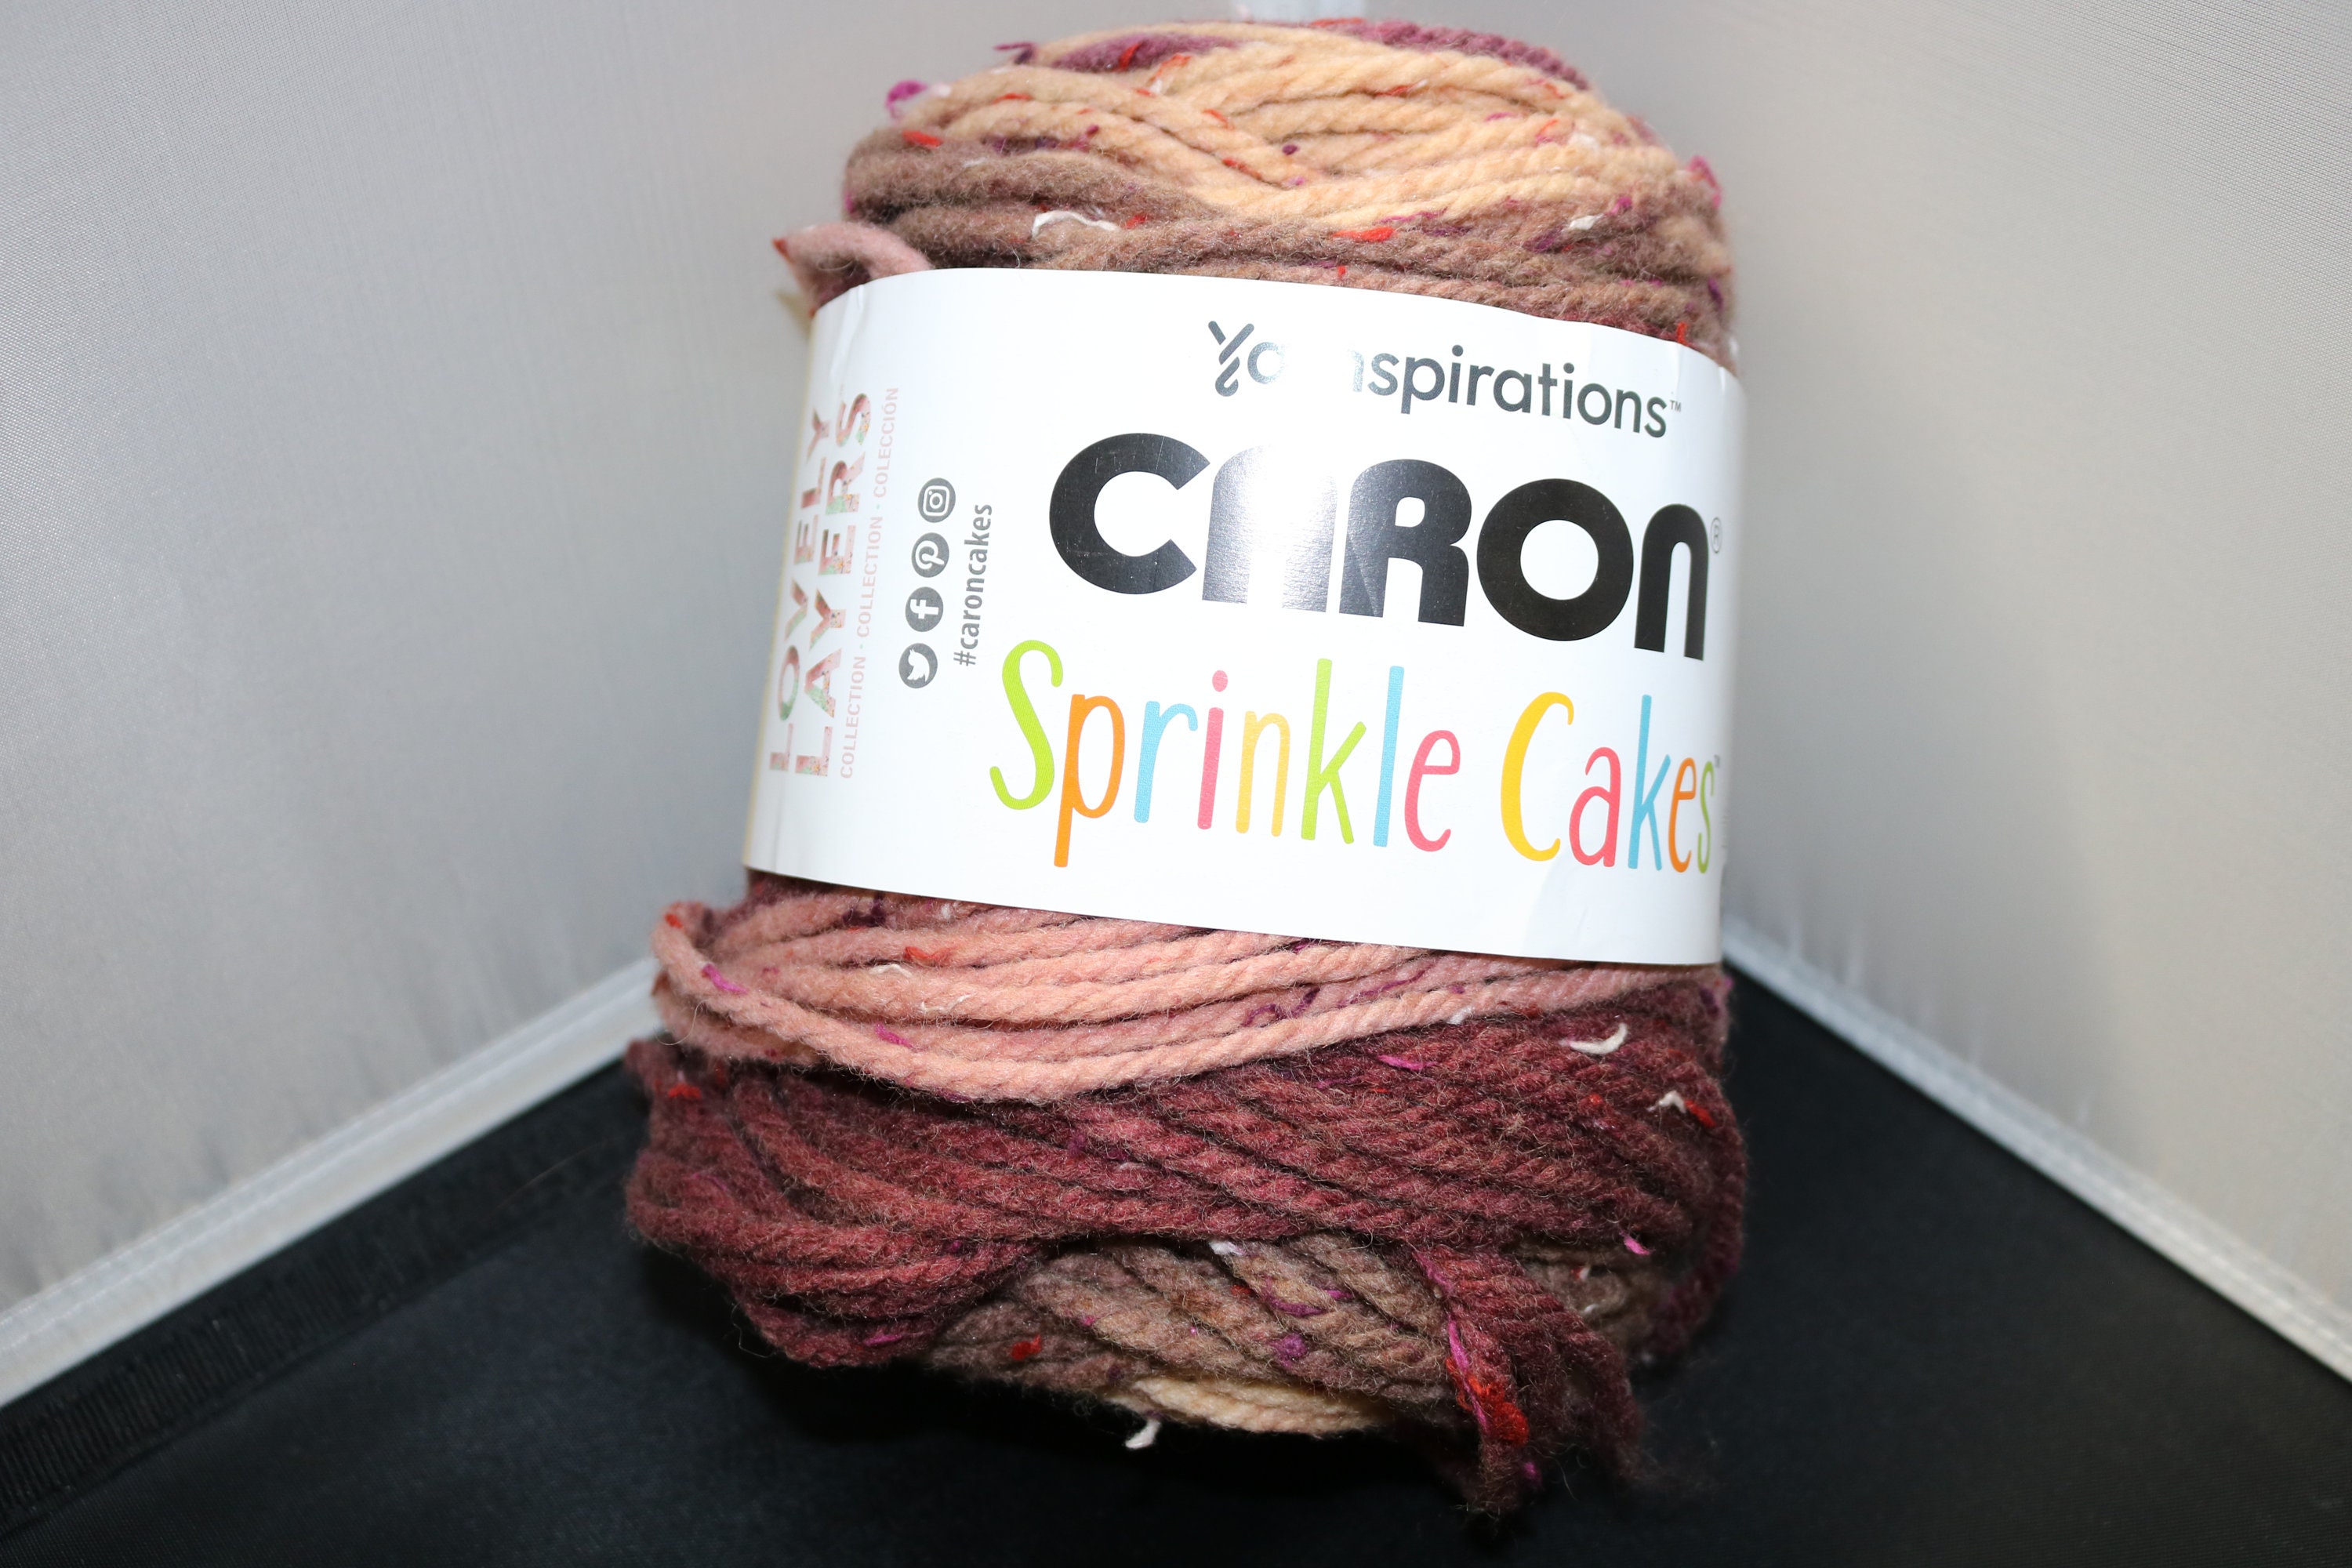 Caron Cakes 200g/383yds/350m Medium 4 Yarn red Velvet 